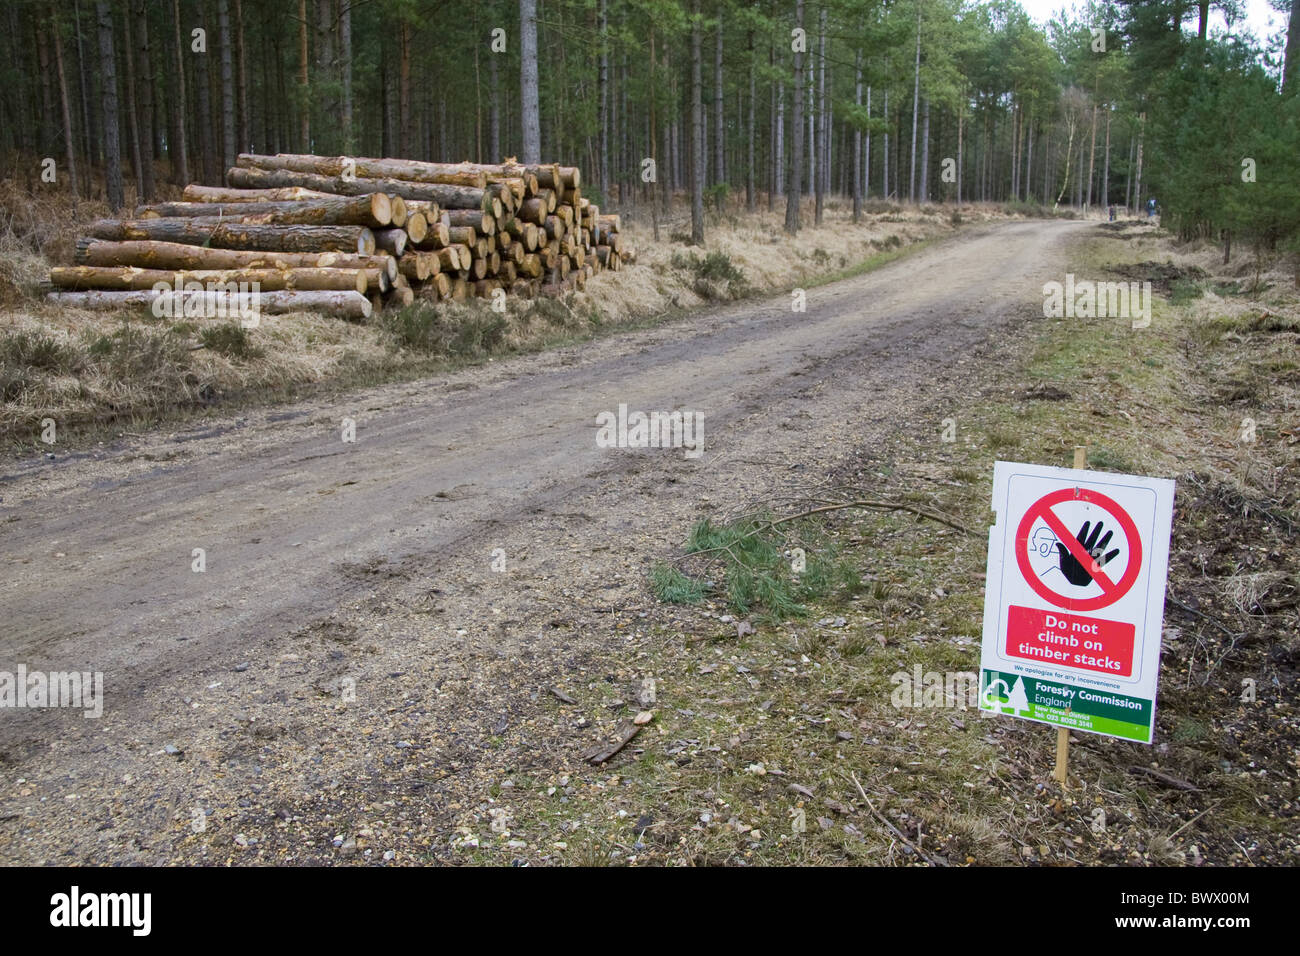 La Grande-Bretagne briitish angleterre anglais europe forêt européenne des forêts Les forêts avertissement avertissements signes commerciaux signe avis uk Banque D'Images